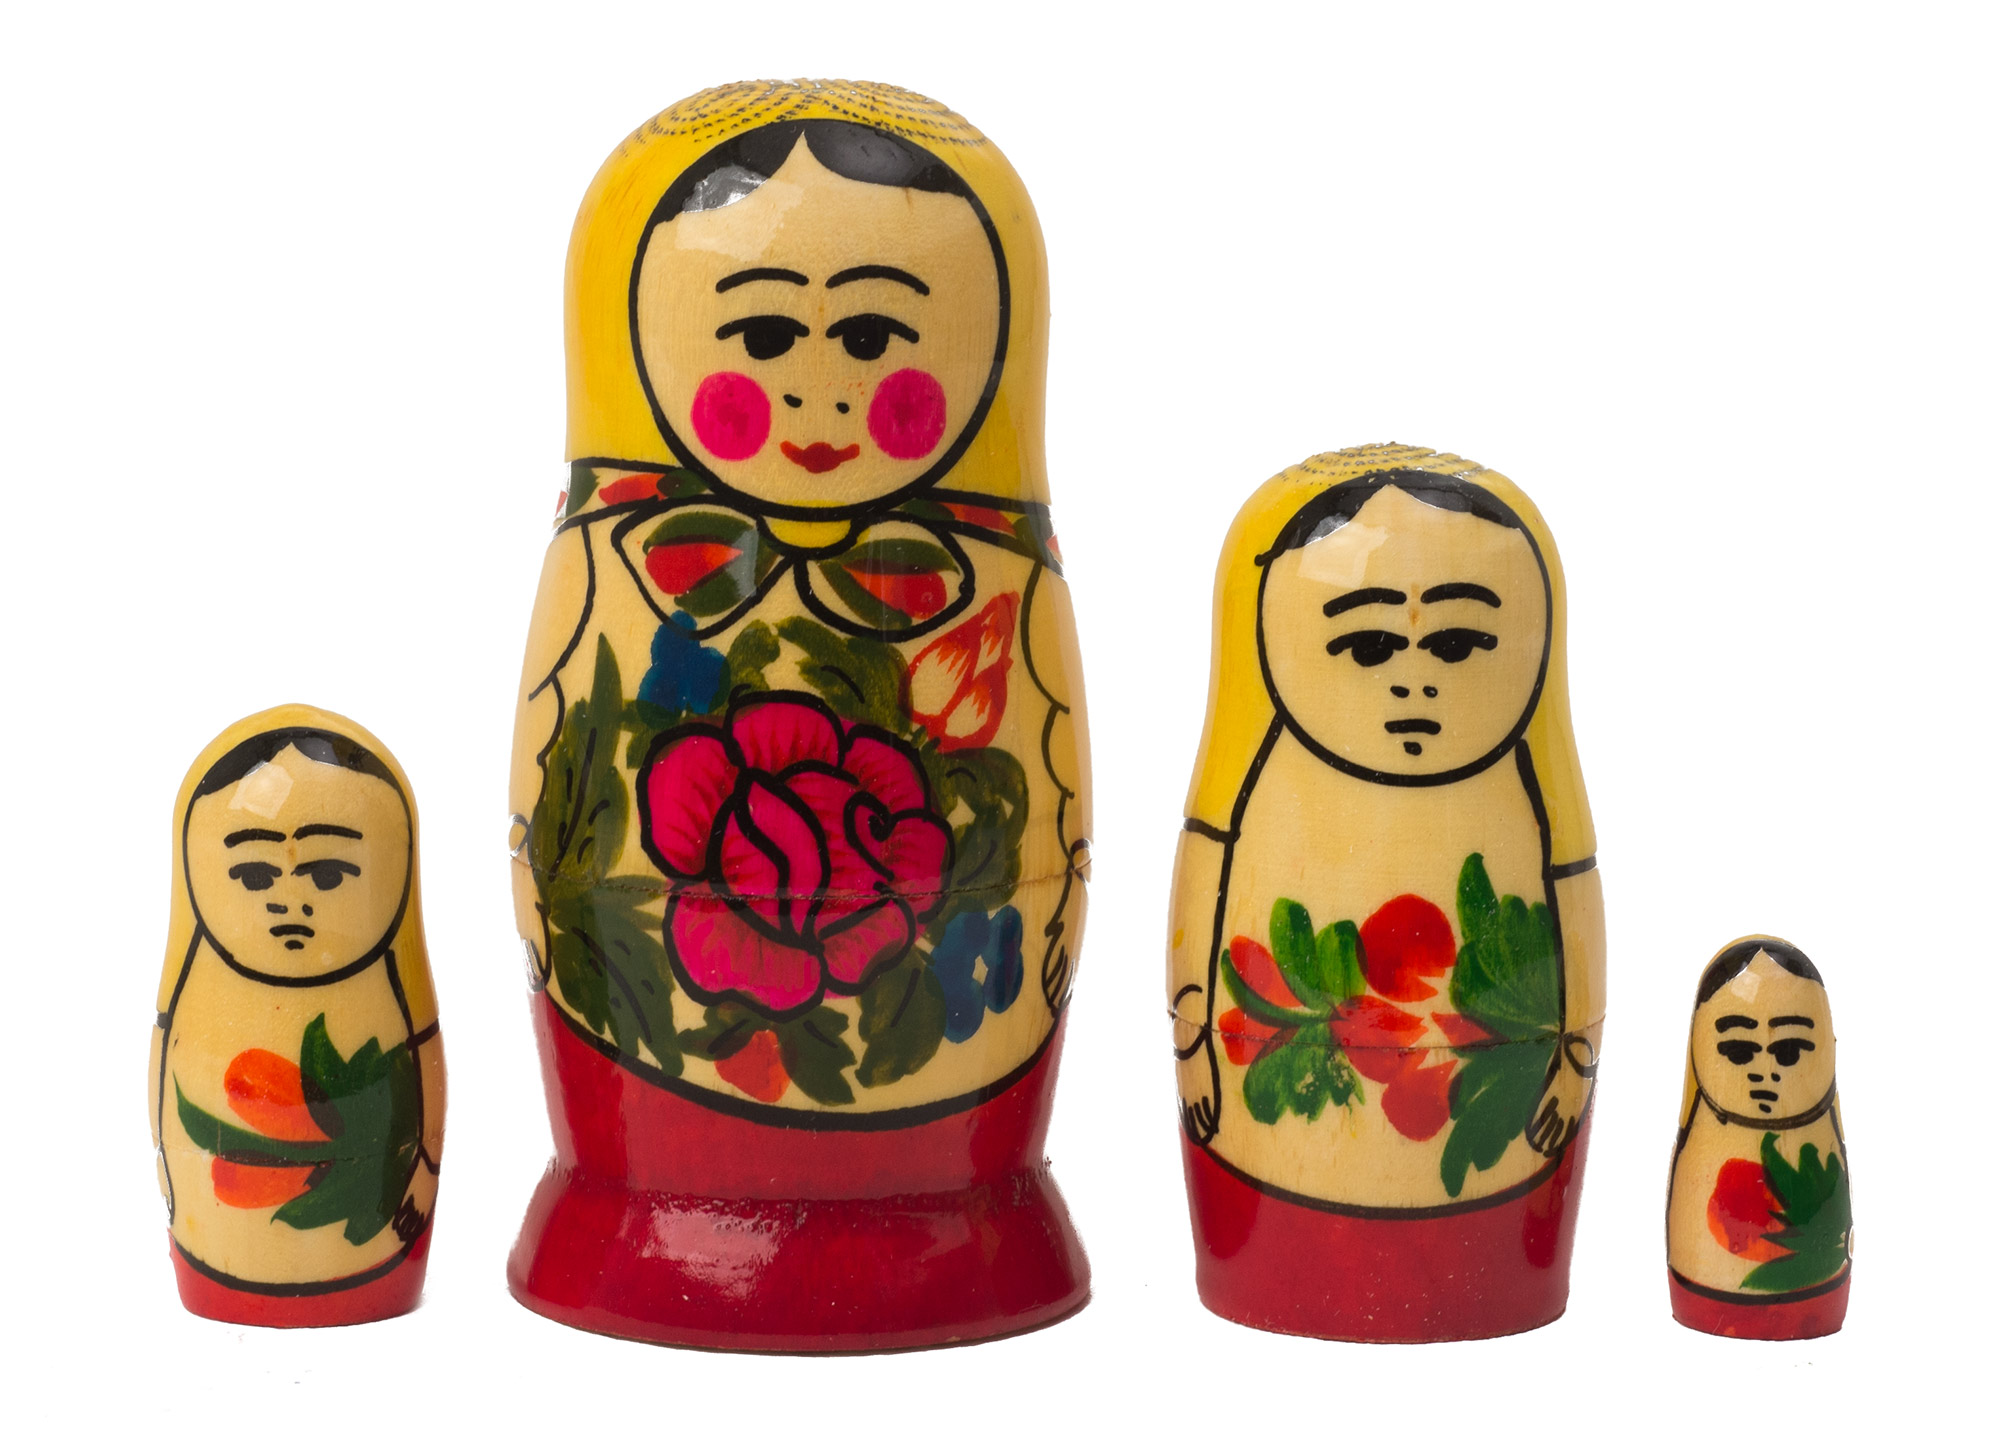 Buy Semenov Matryoshka Doll 4pc./3.5" at GoldenCockerel.com